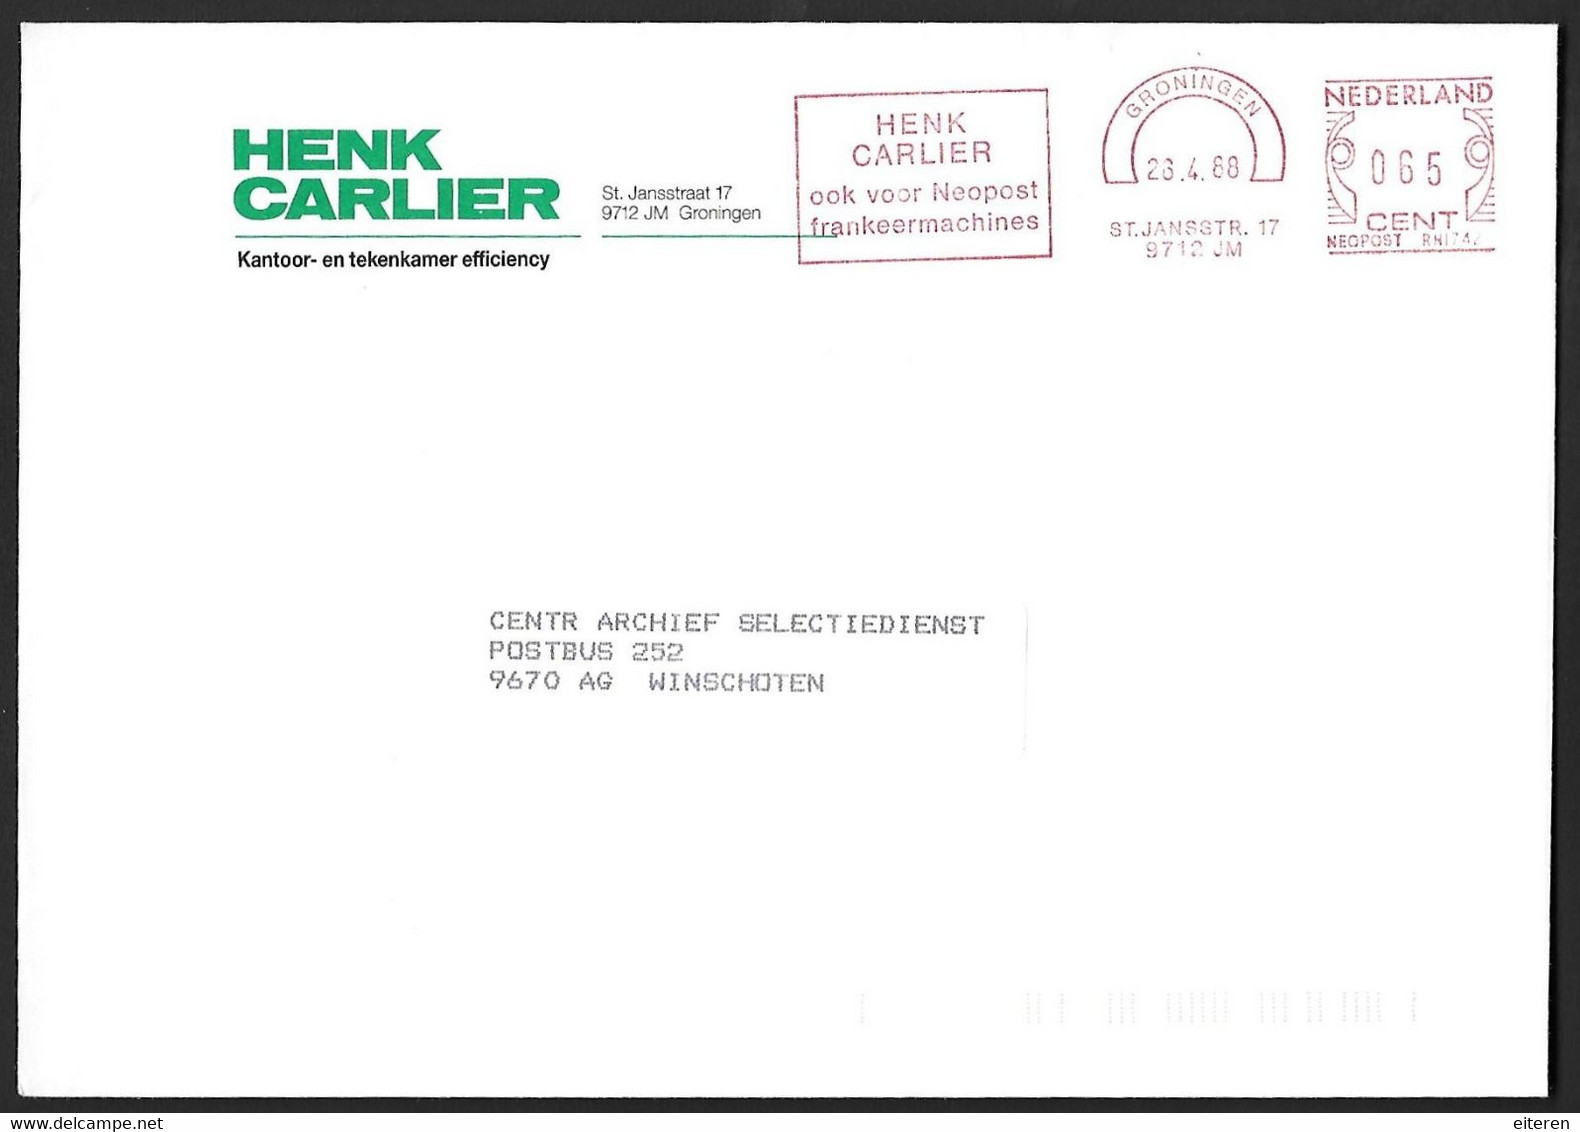 Henk Carlier - Ook Voor Neopost Frankeermachines - Macchine Per Obliterare (EMA)